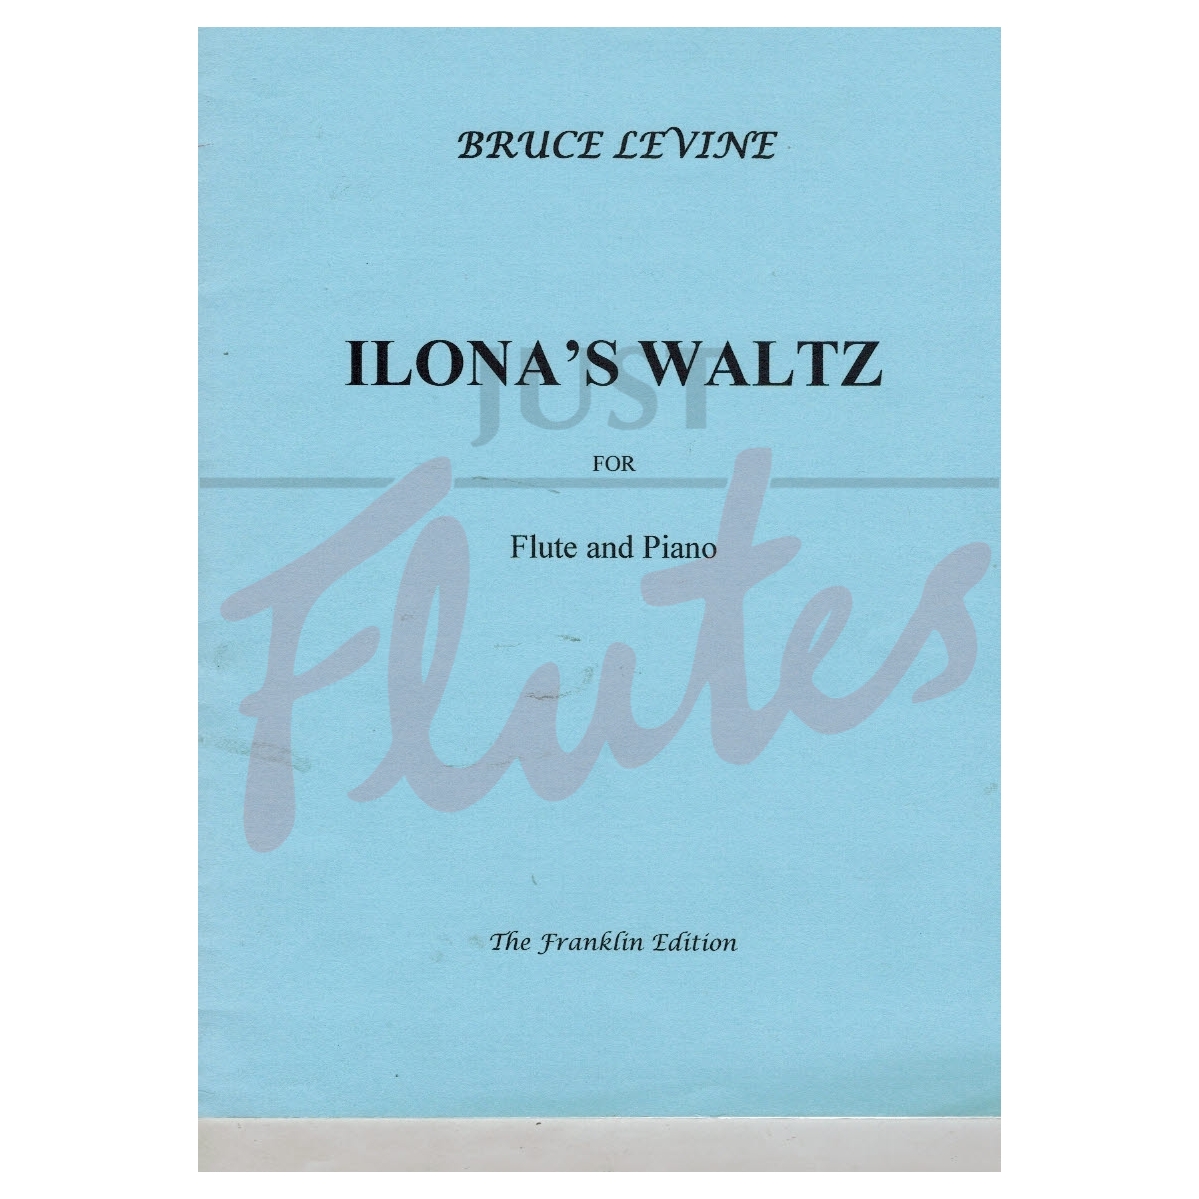 Ilona's Waltz for Flute and Piano